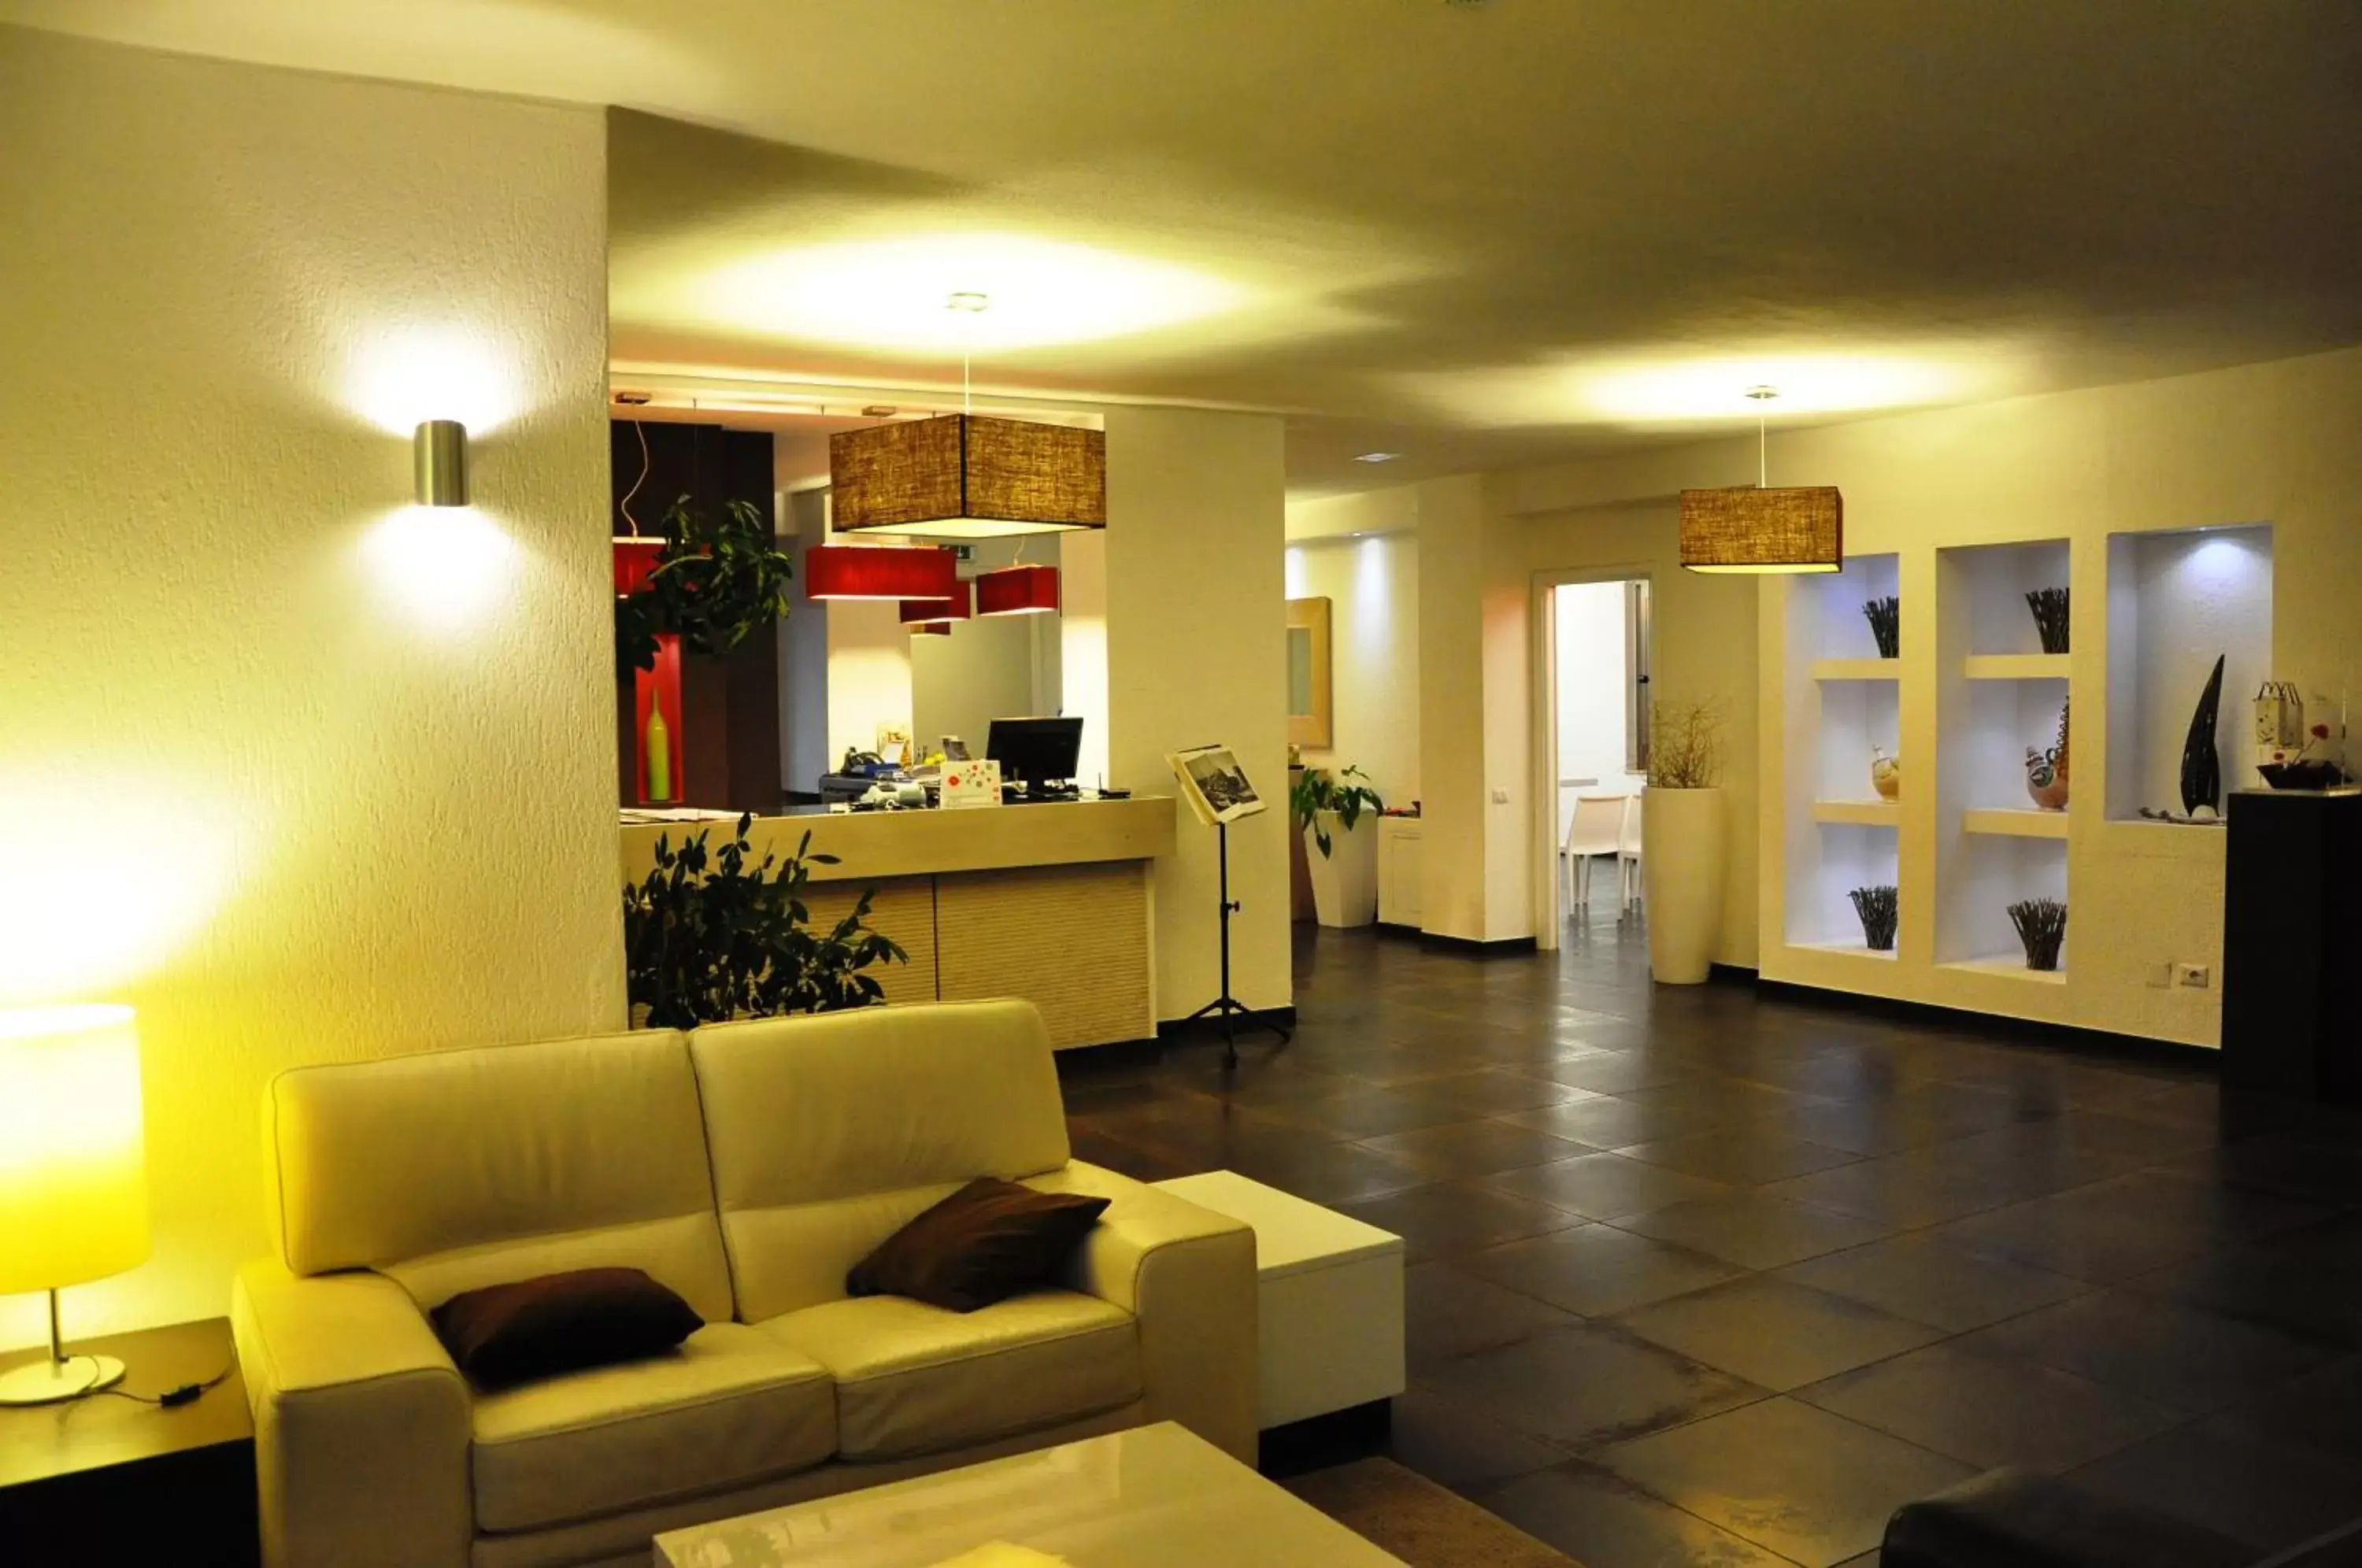 Lobby or reception in Hotel Sandalia